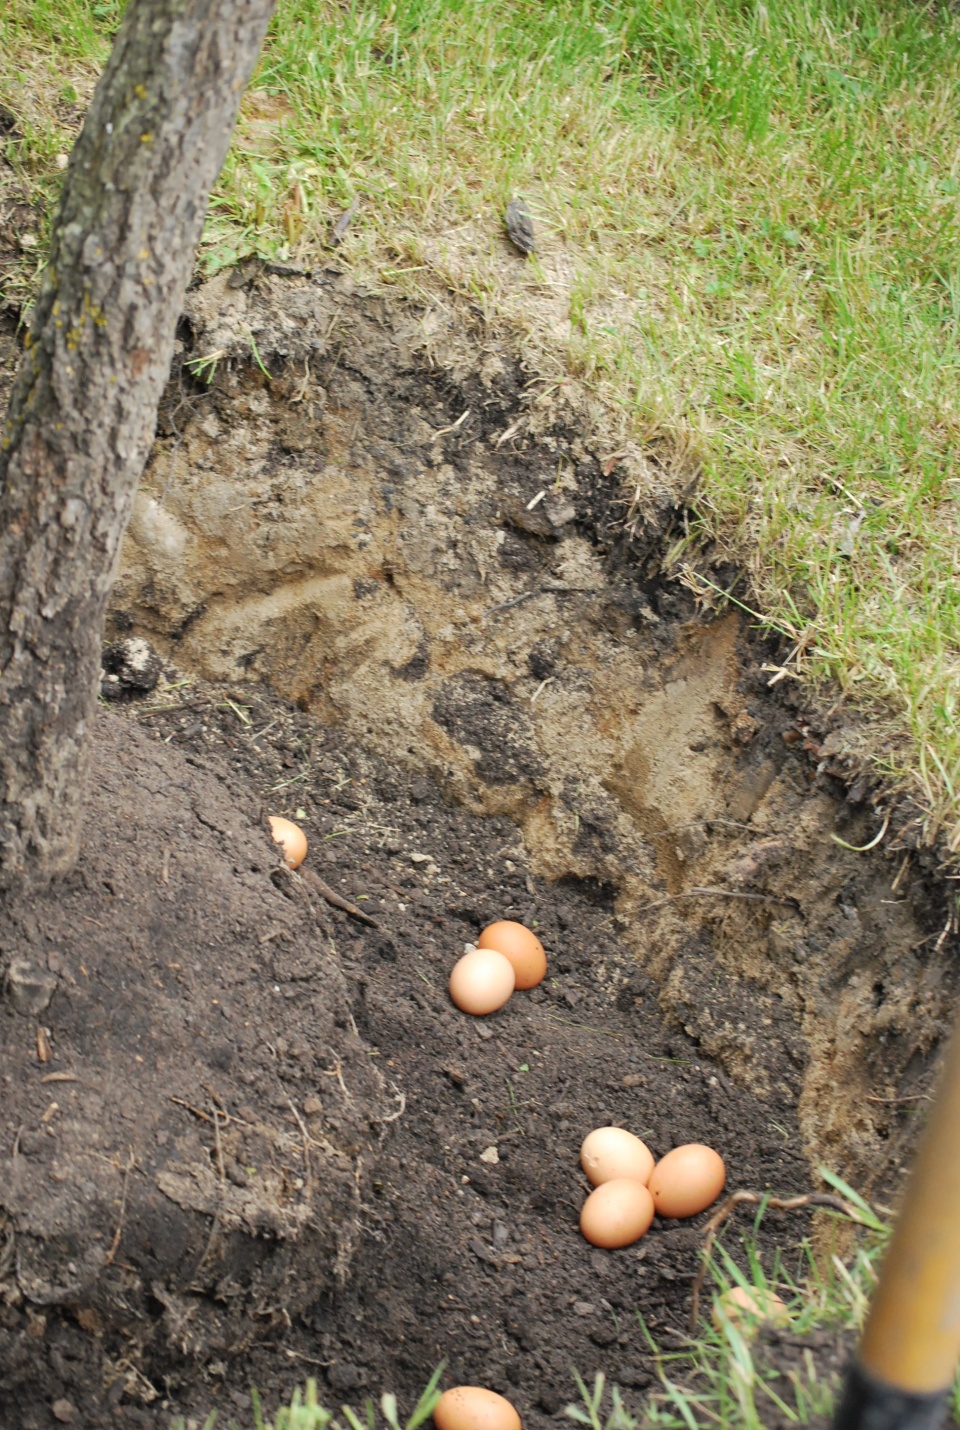 Profesor zadbał o to, by jego drzewo dobrze rosło - użyźniając glebę jajkami. (fot. M. Jasińska)